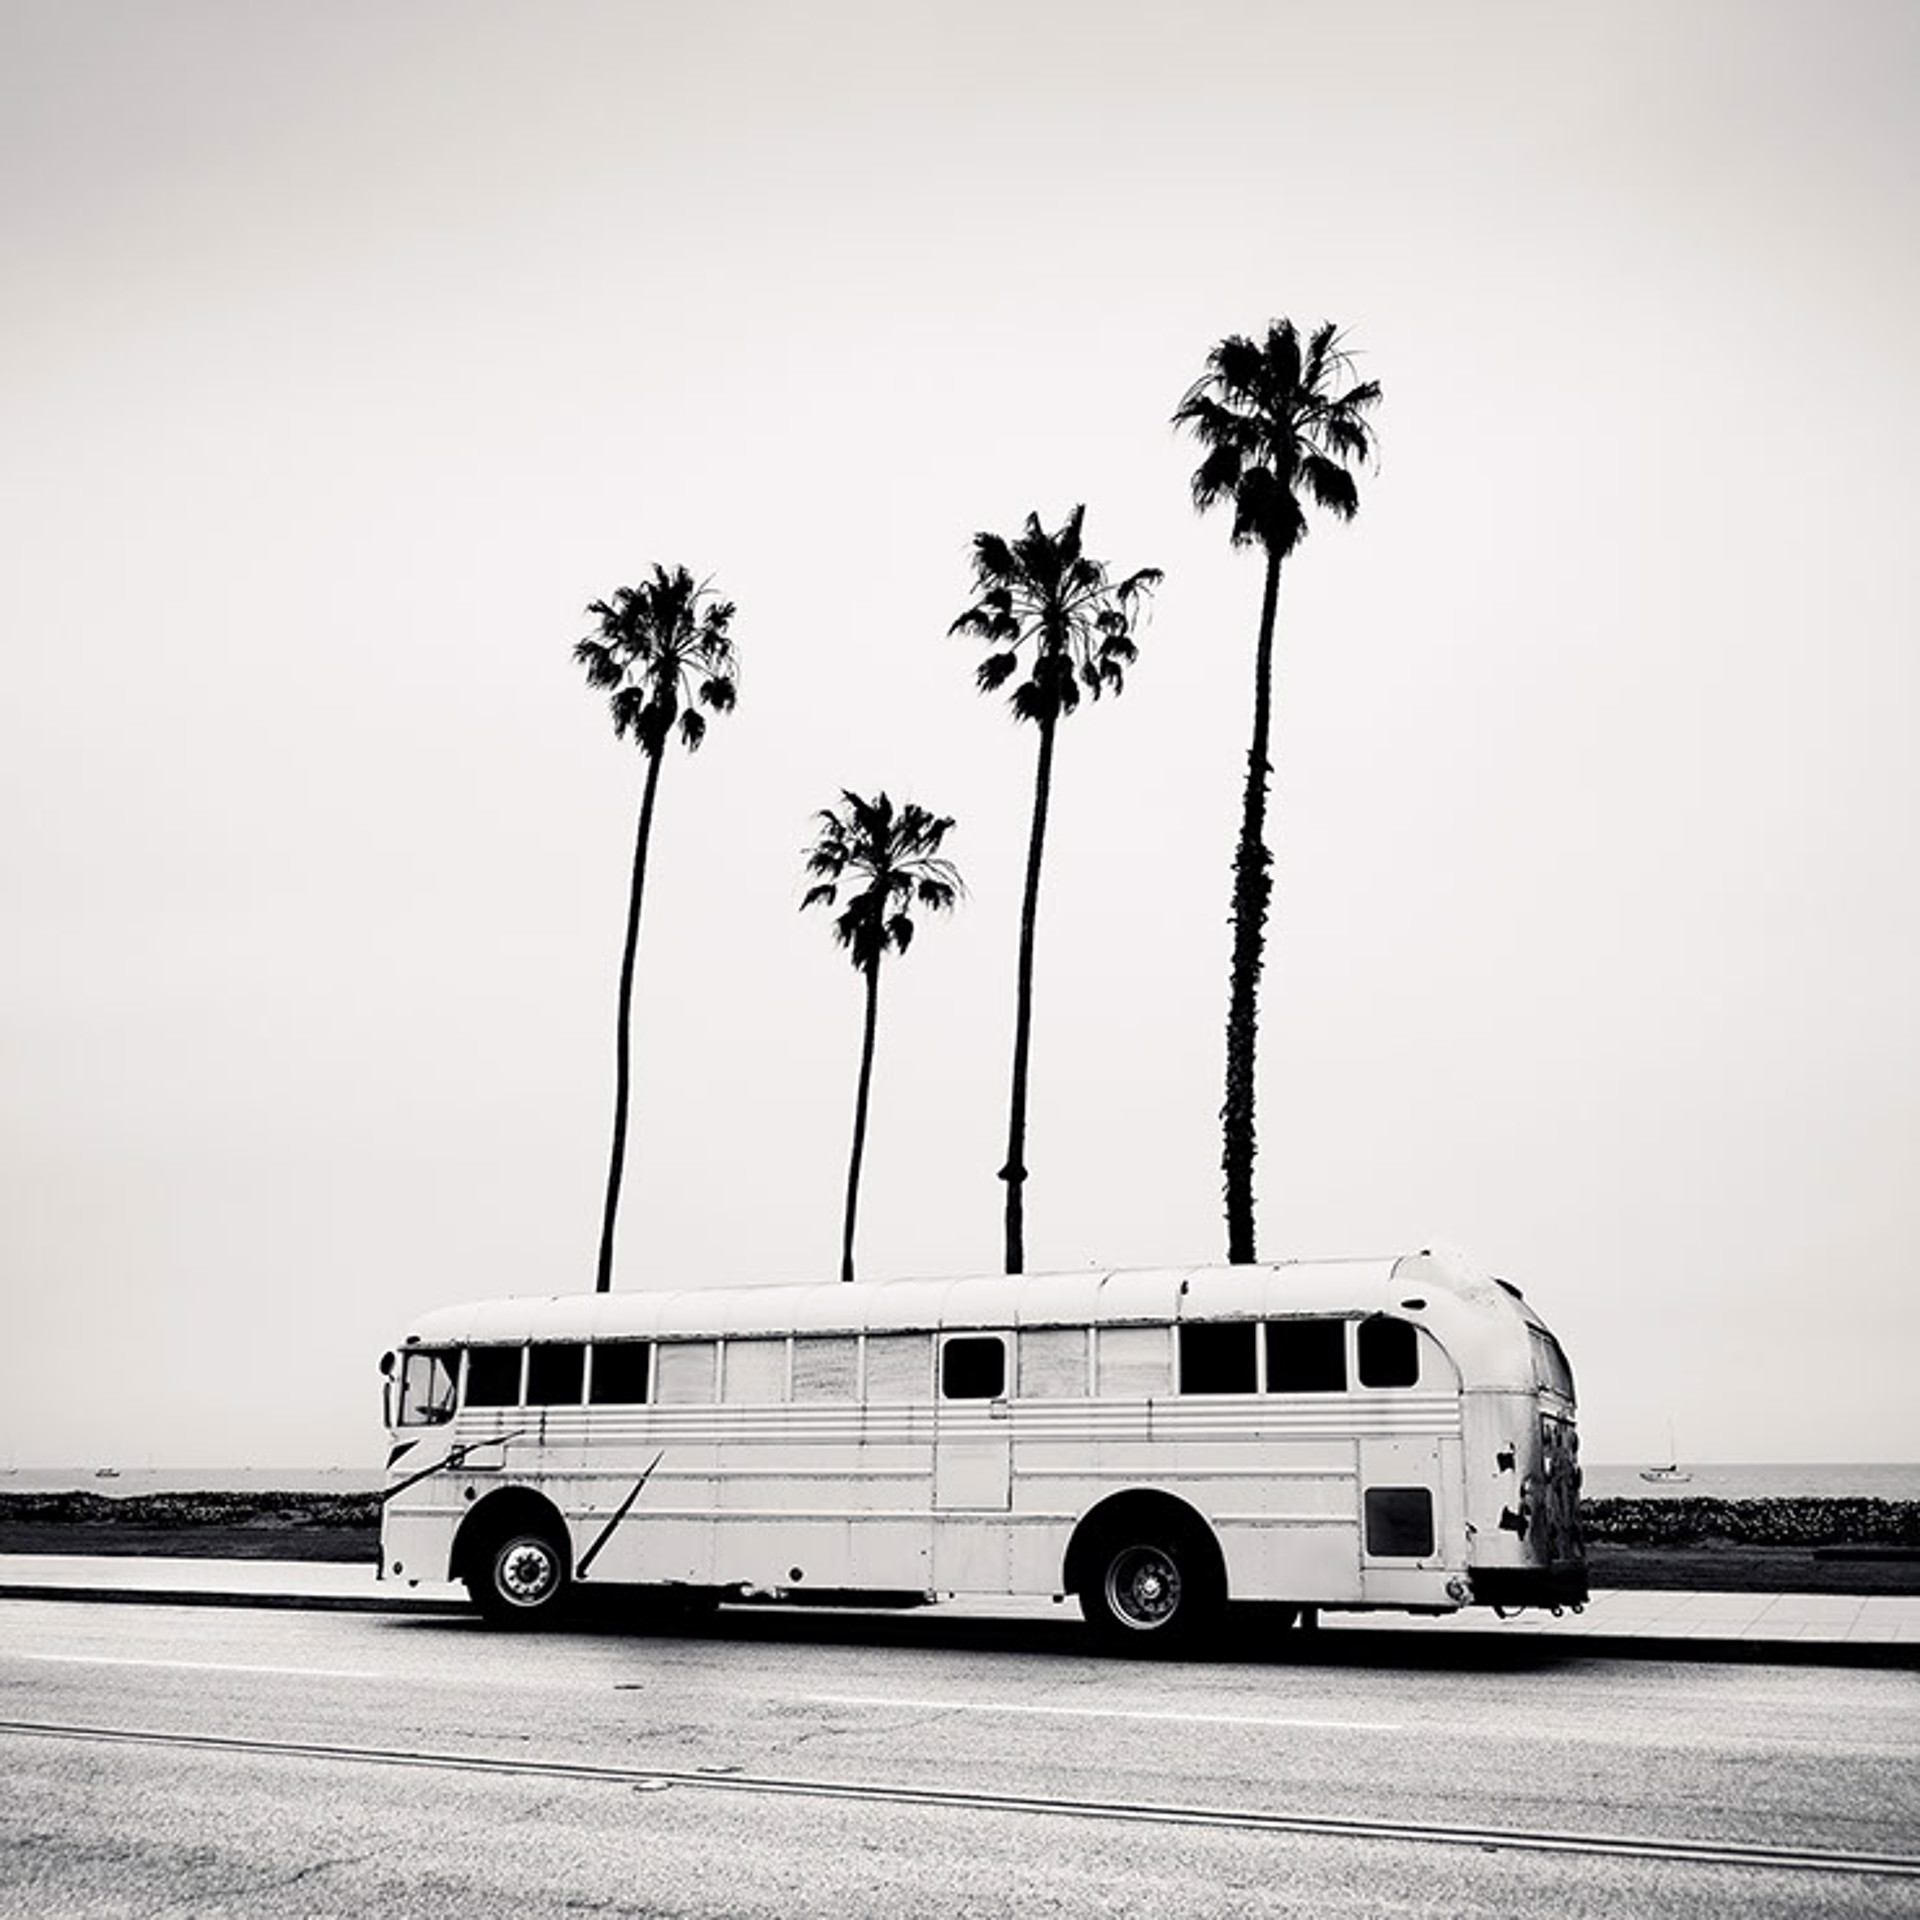 Bus Stop, Santa Barbara, California by Josef Hoflehner